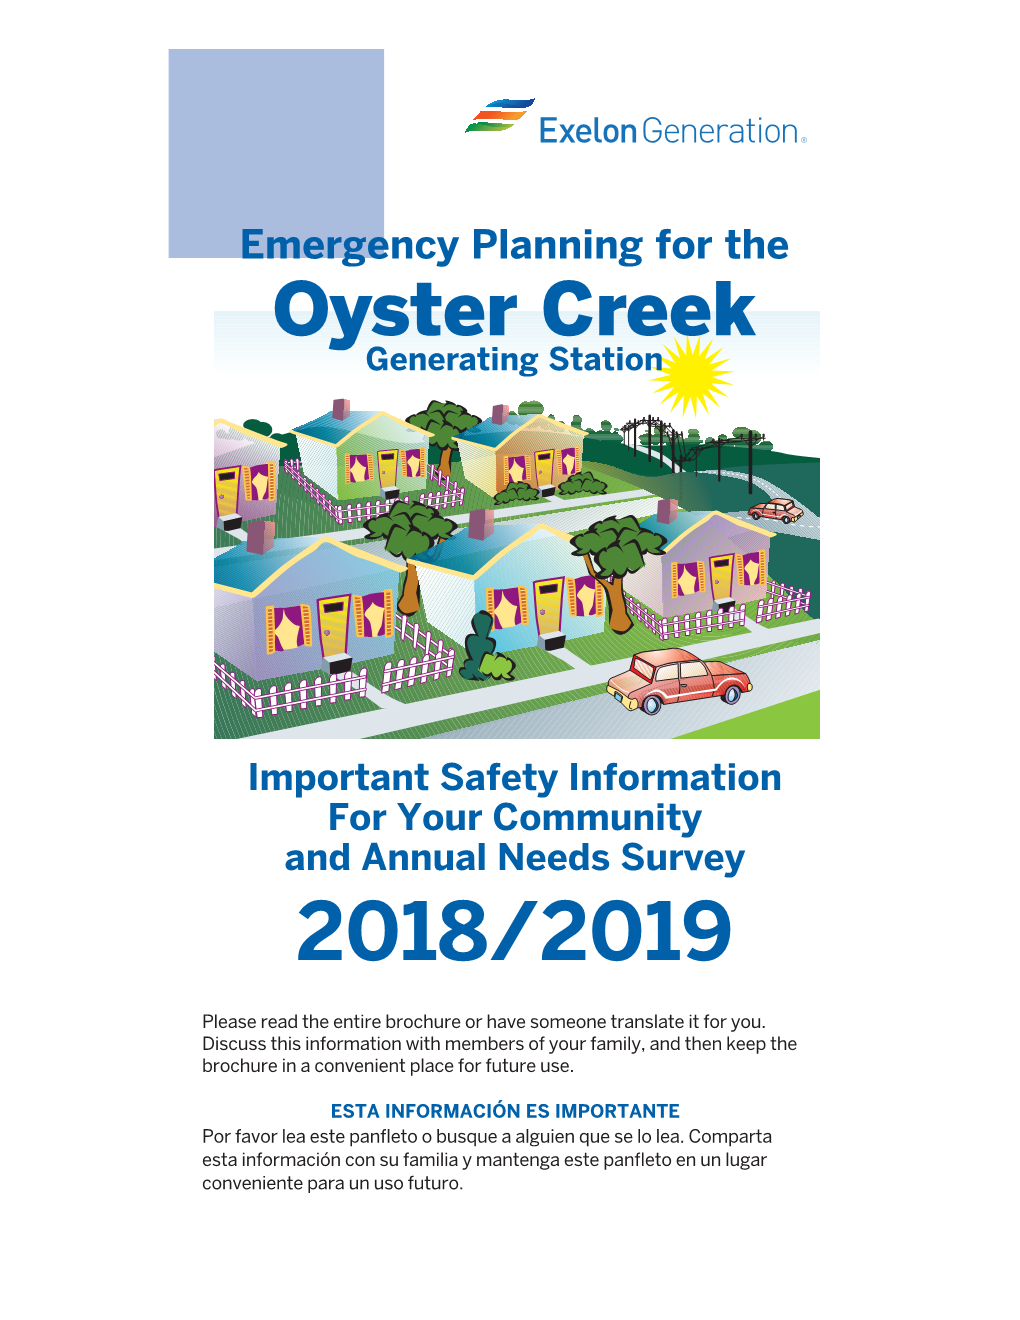 Oyster Creek Emergency